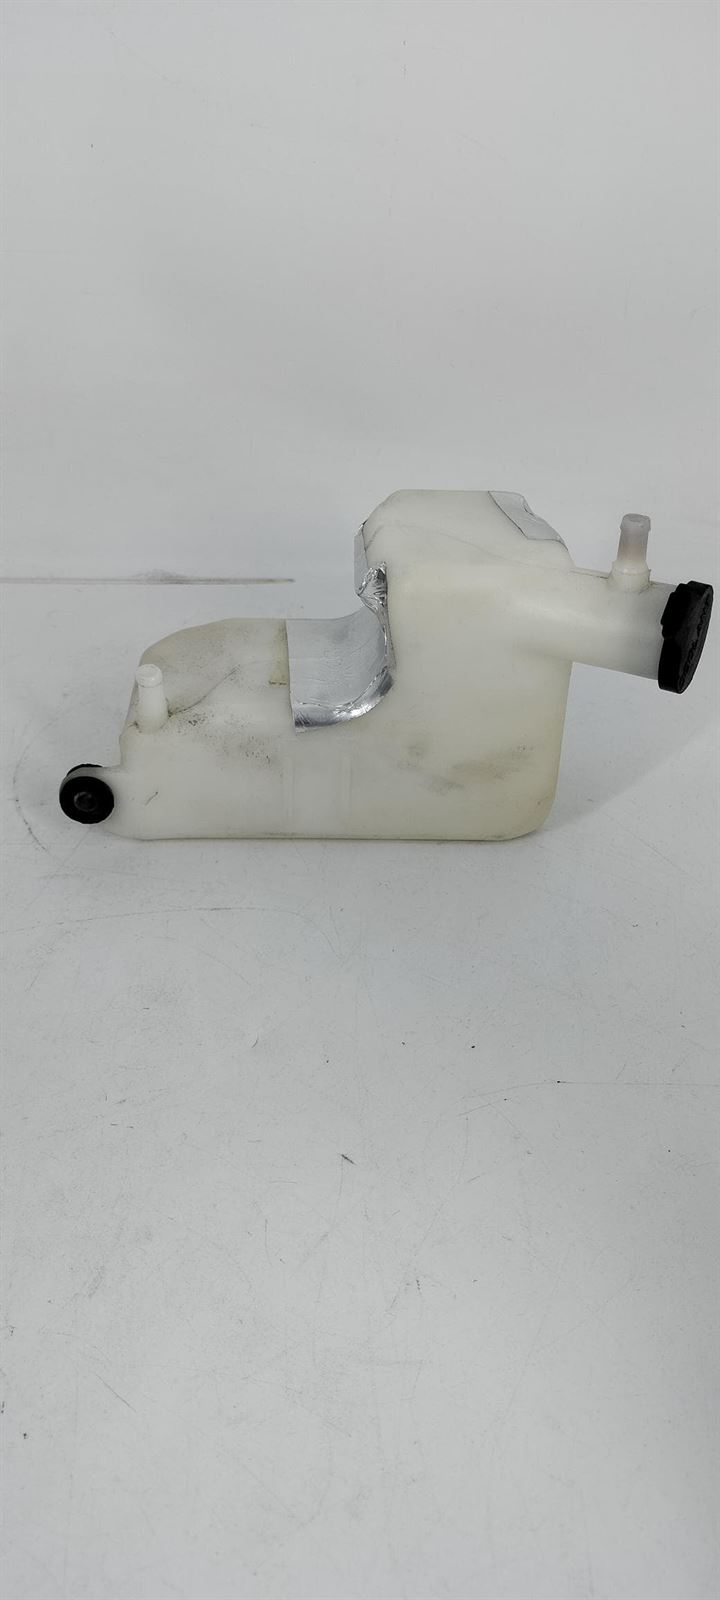 Depósito líquido refrigerante Hyosung GV 650 - Imagen 2